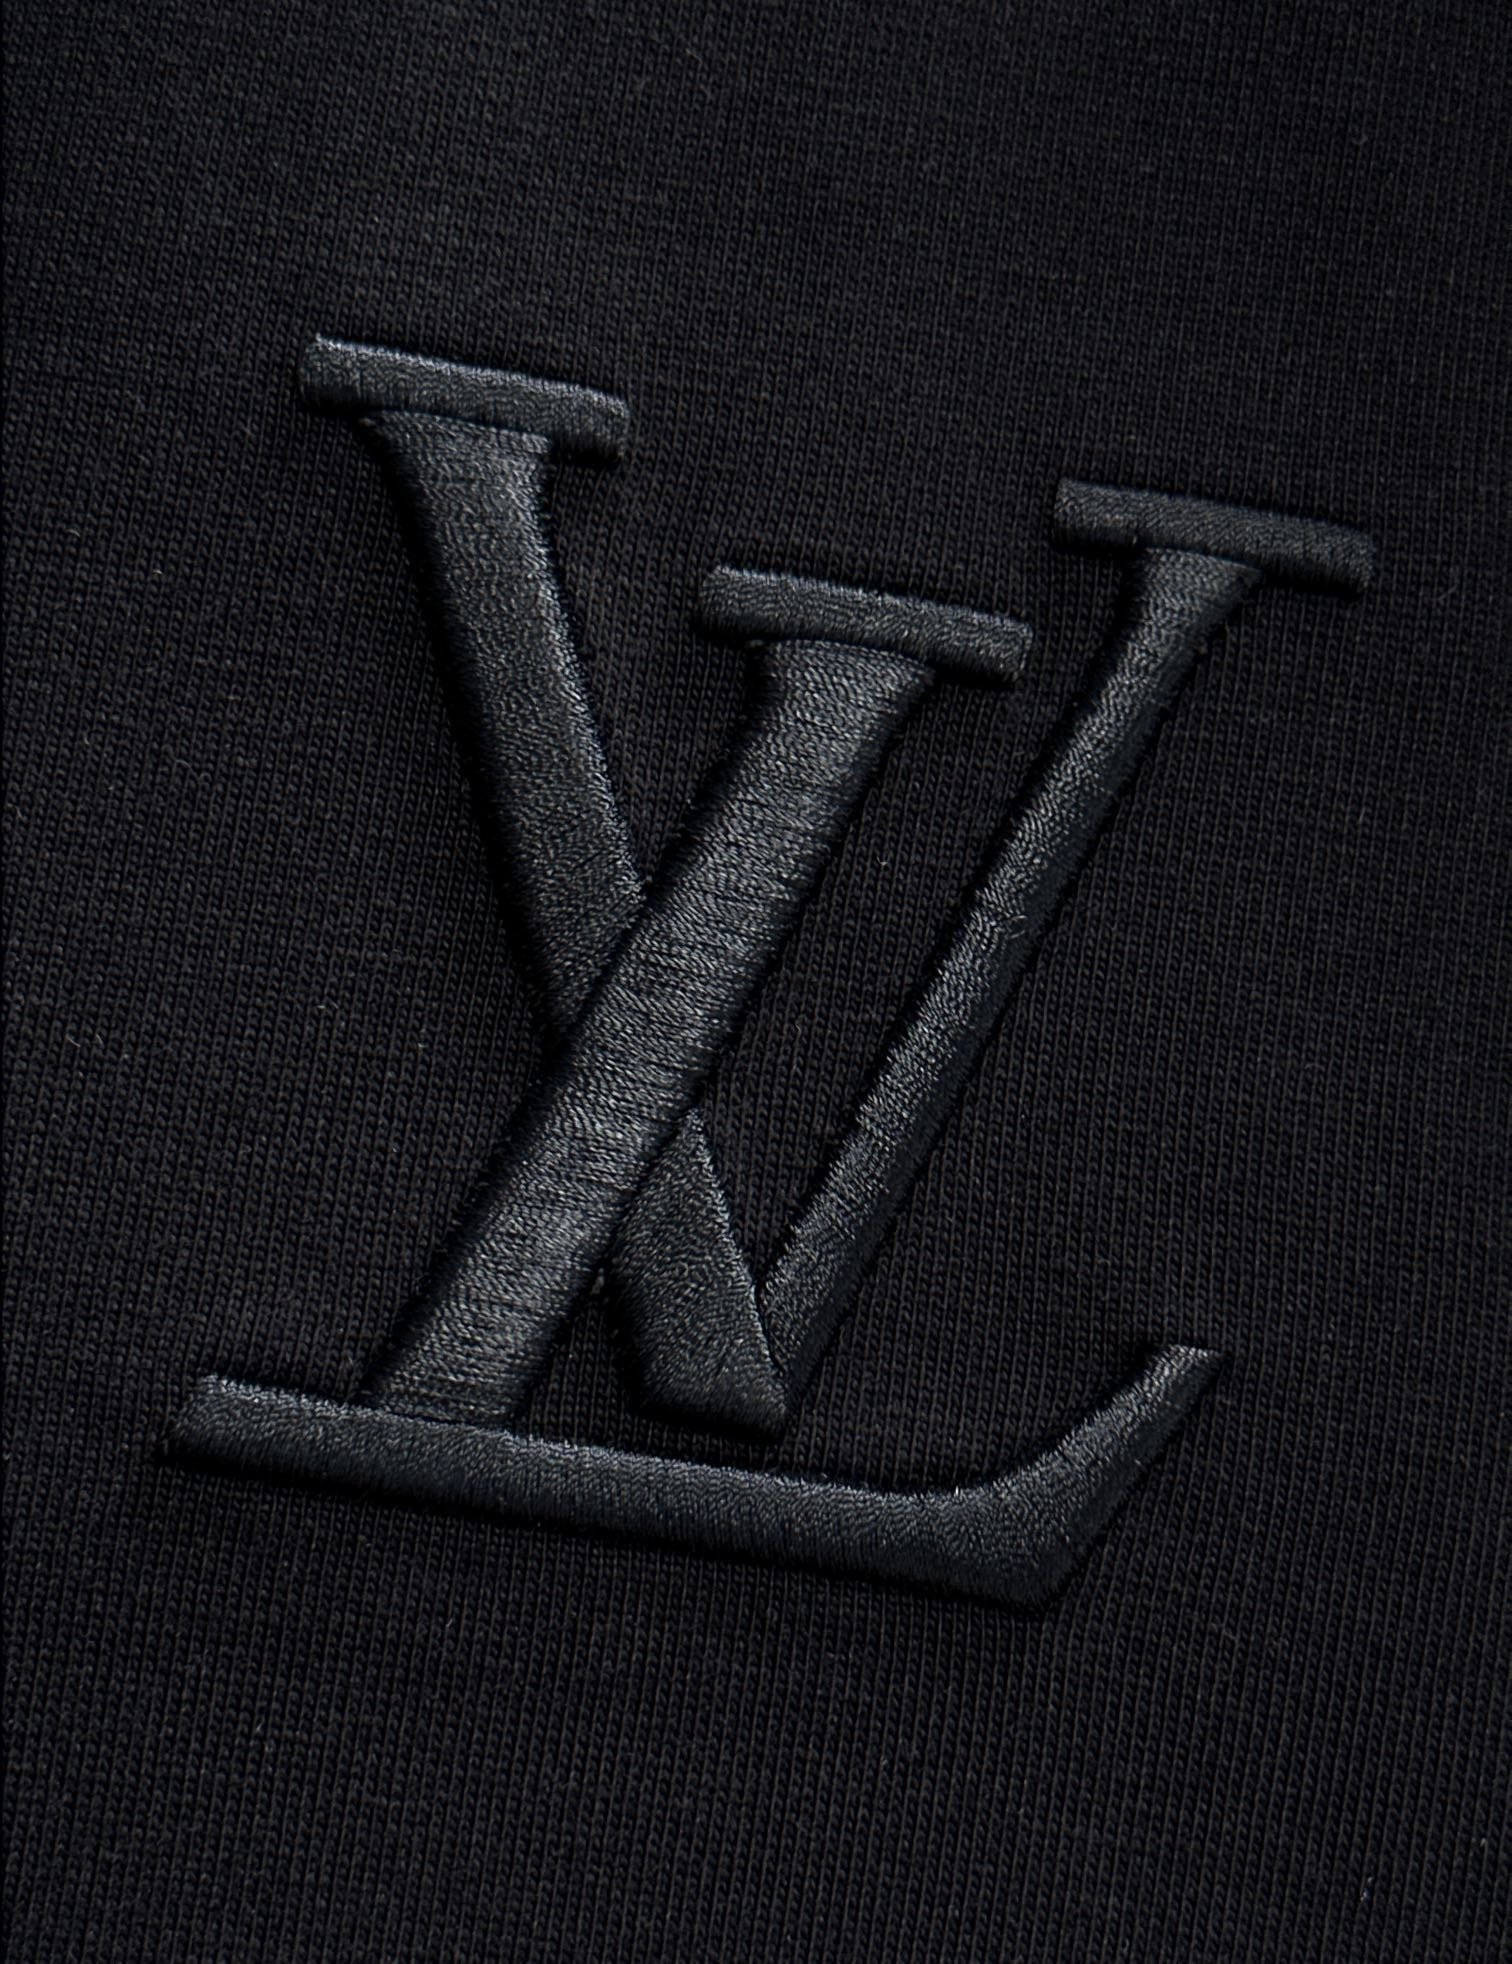 LV24/ss春夏新款棉质圆领短袖T恤胸前刺绣logo+完美印花后背皮牌标识+完美印花顶级纯棉面料定制标